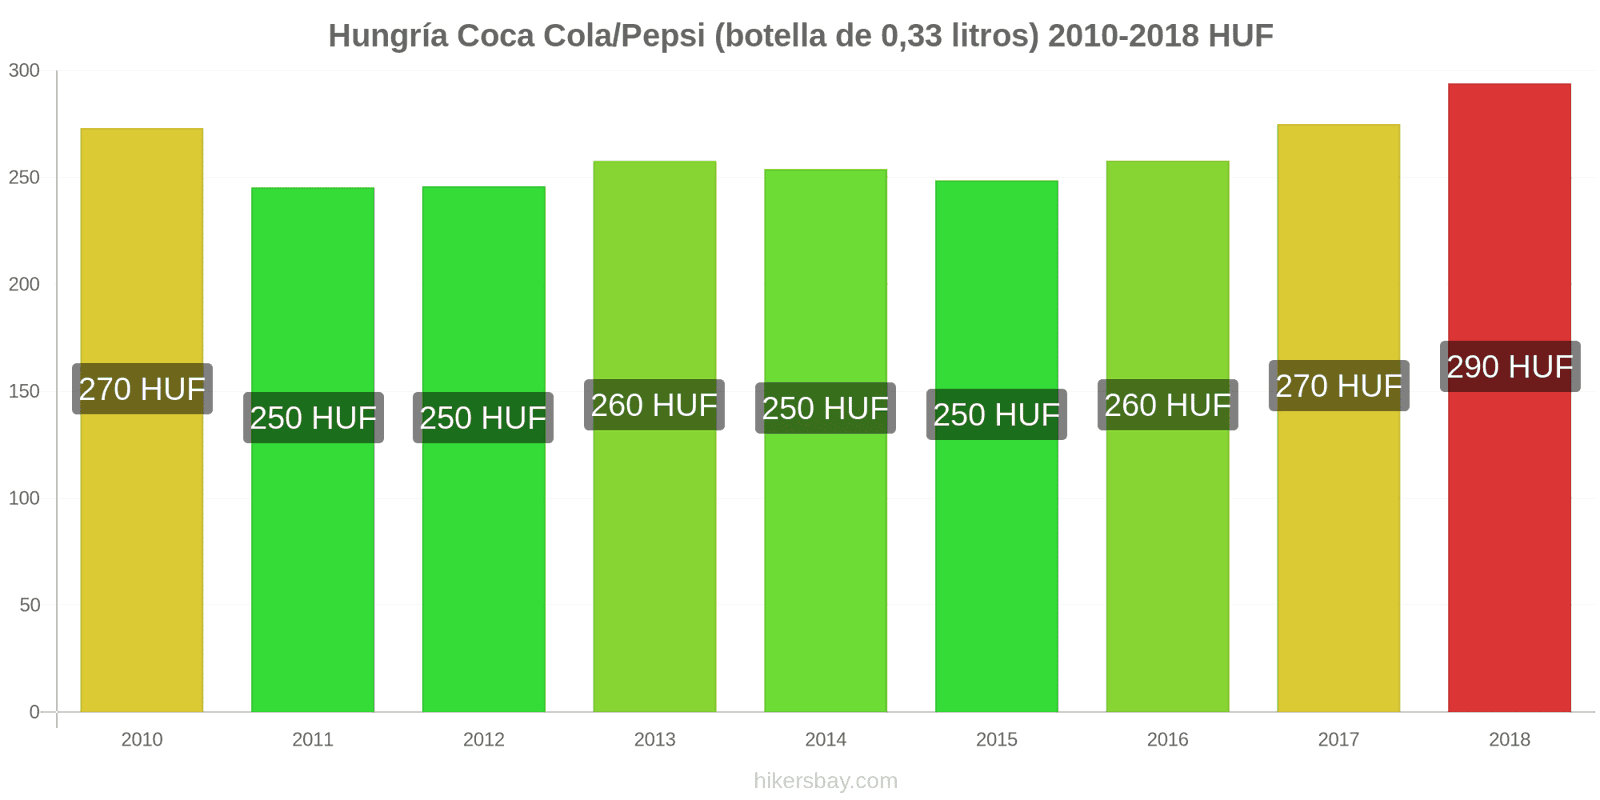 Hungría cambios de precios Coca-Cola/Pepsi (botella de 0.33 litros) hikersbay.com